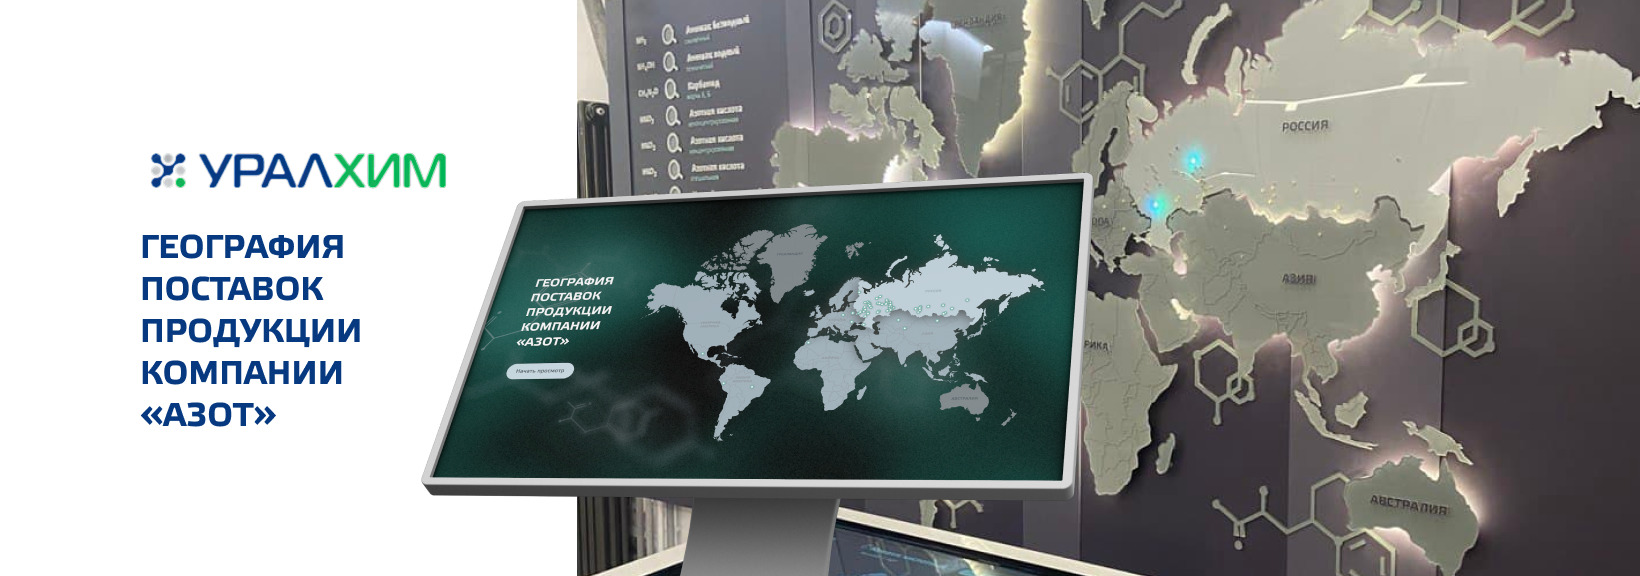 Интерактивная карта для филиала «Азот» «УРАЛХИМ»